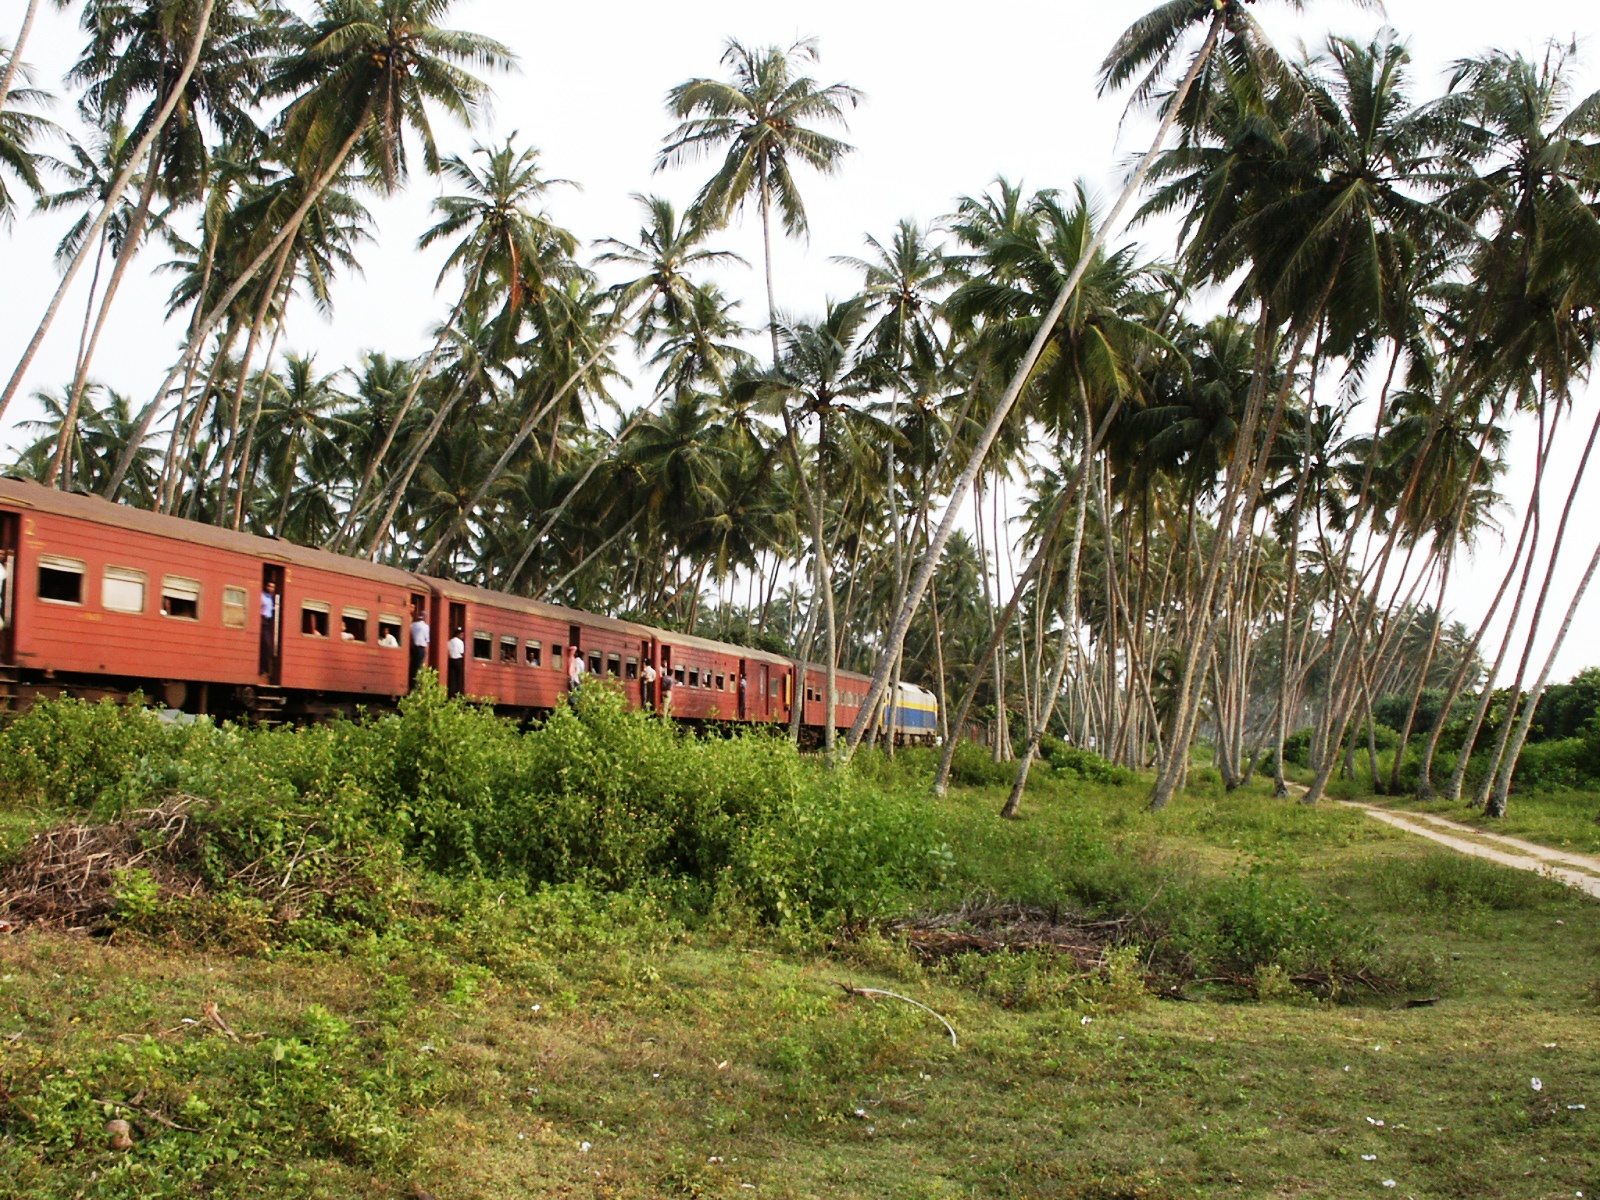 Voyage en train au Sri-Lanka, une aventure inoubliable! Photo © Marc Rigole